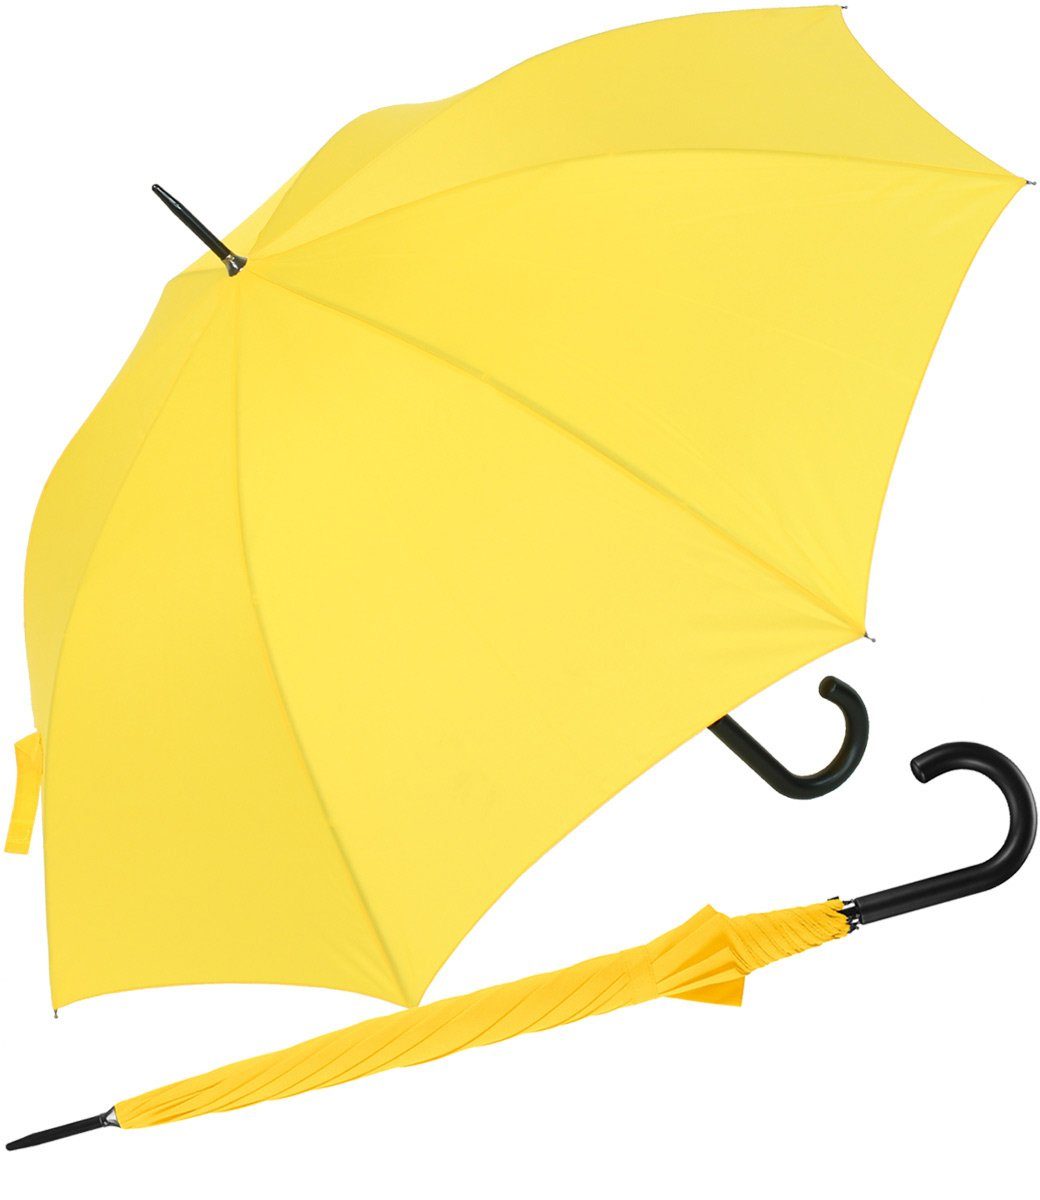 RS-Versand Langregenschirm großer stabiler Regenschirm mit Auf-Automatik, für Damen und Herren in vielen modischen Farben gelb